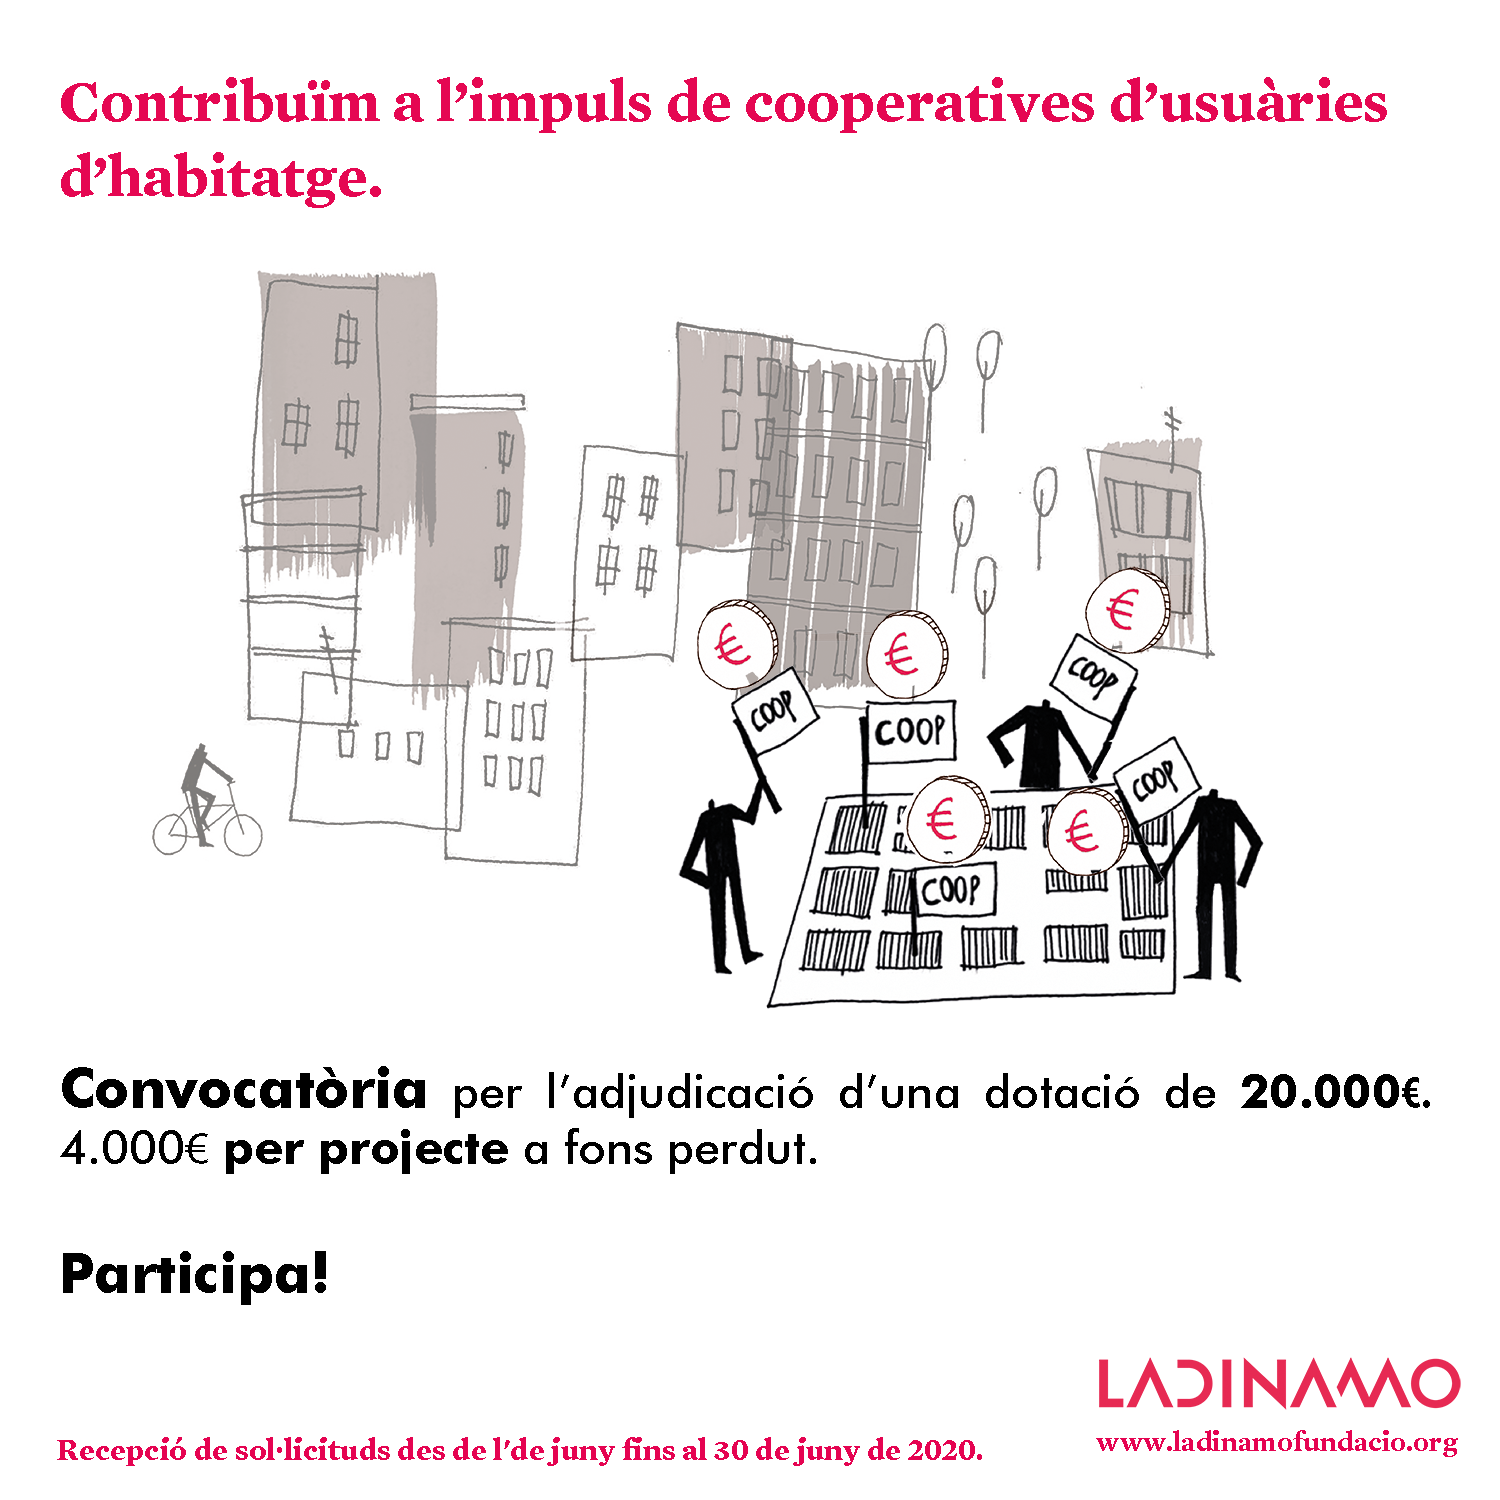 La Dinamo Fundació contribueix a l’impuls de cooperatives d’usuàries d’habitatge a Catalunya